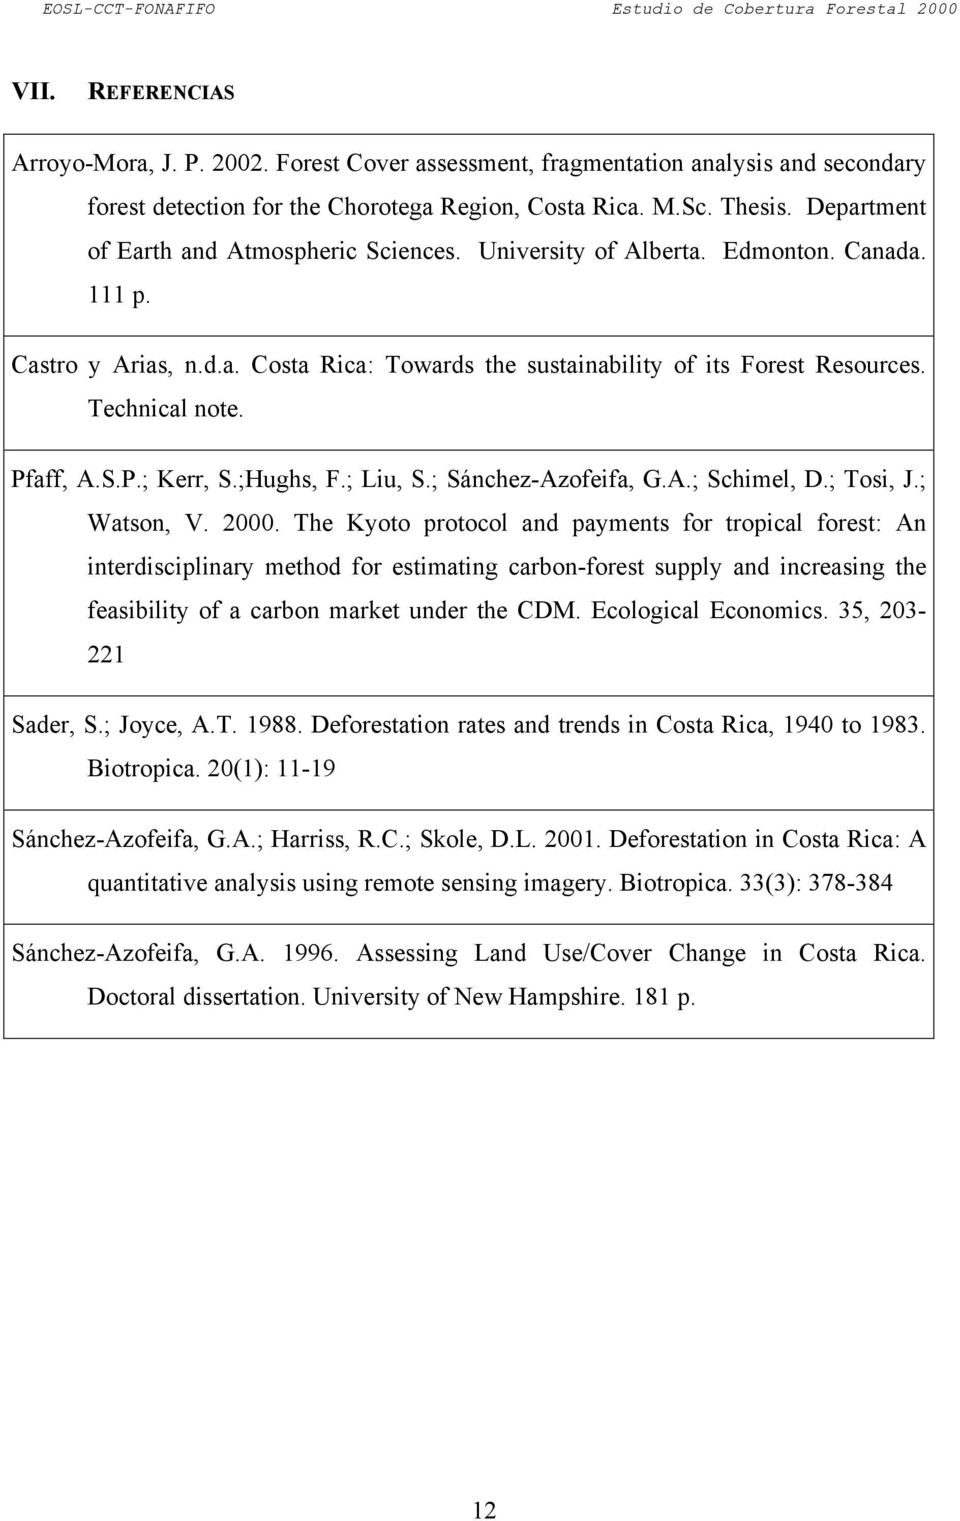 Pfaff, A.S.P.; Kerr, S.;Hughs, F.; Liu, S.; Sánchez-Azofeifa, G.A.; Schimel, D.; Tosi, J.; Watson, V. 2000.